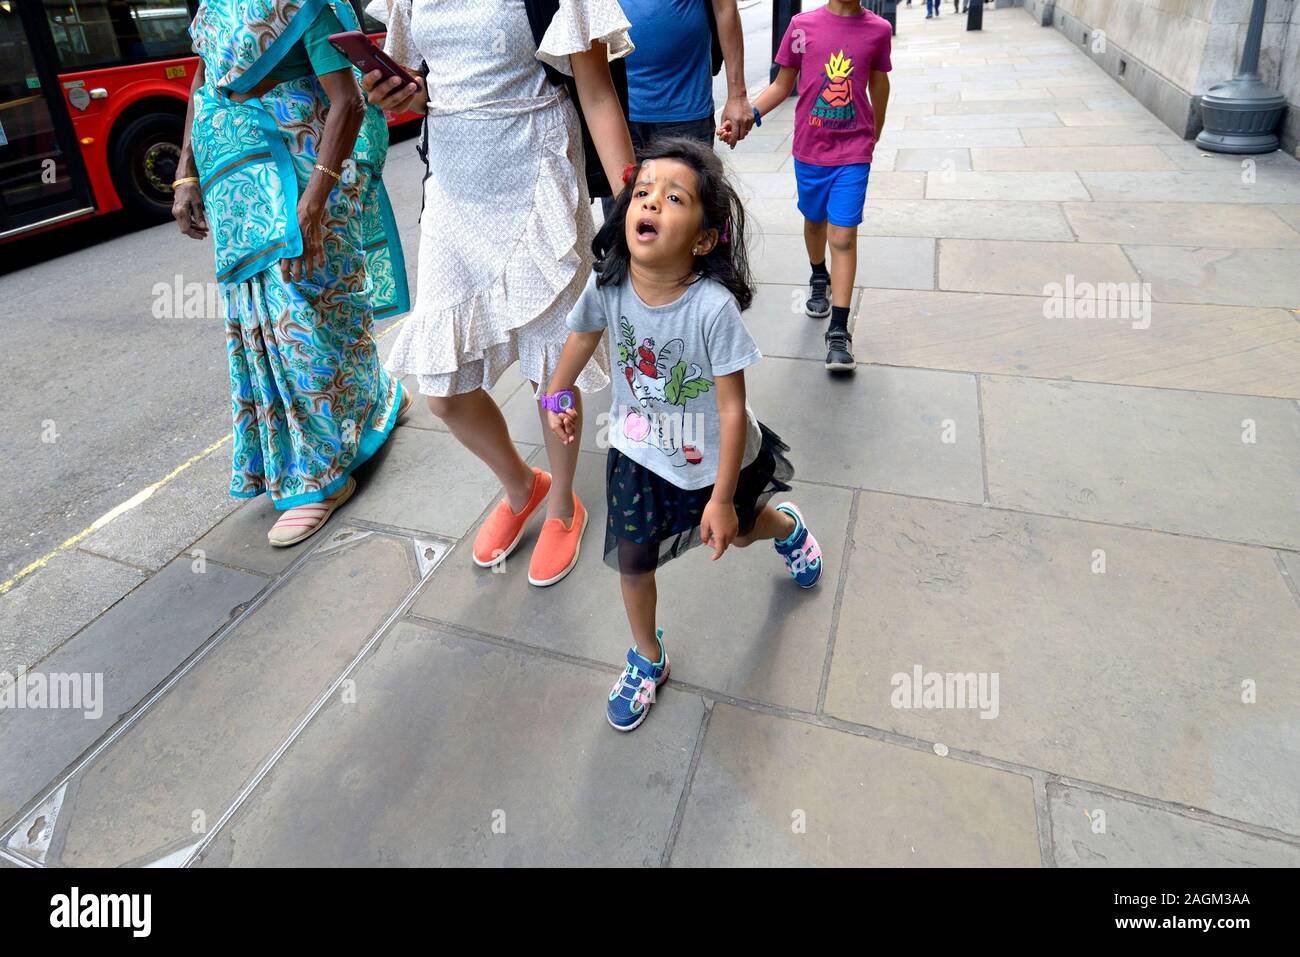 London, England, UK. Junge Mädchen zu Fuß, widerstrebend, mit ihrer Familie Stockfoto